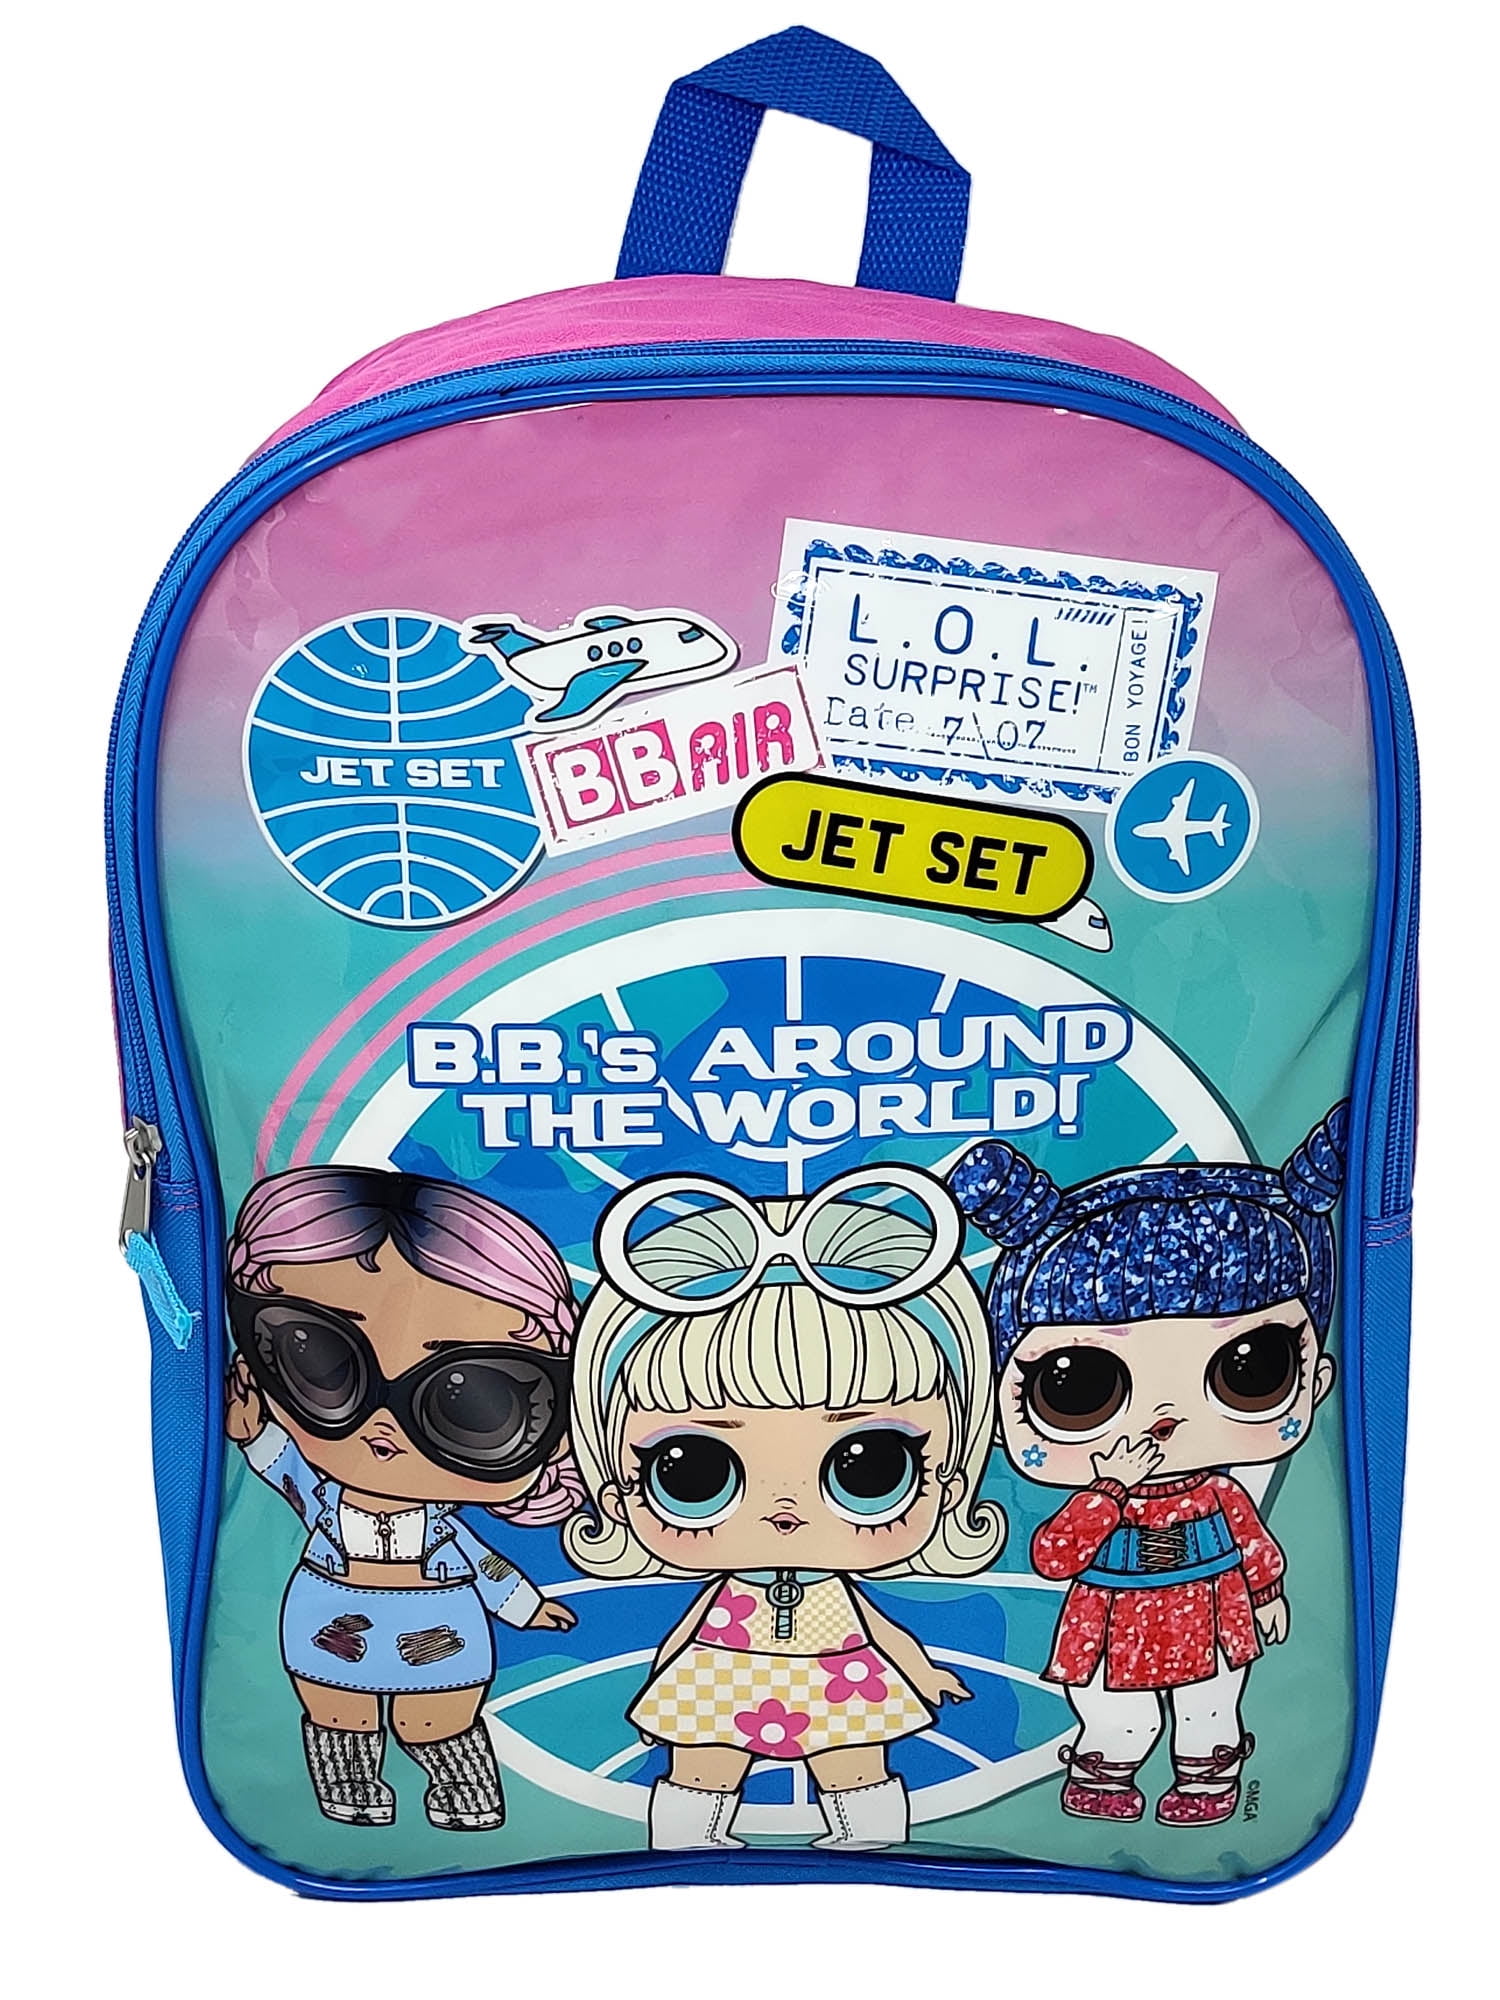 LOL Surprise Backpack 15 Jet Set Q T Kawaii Queen Go Go Gurl Pink Blue Girls 96867ce7 12b1 4291 b270 41bef7d5d016.97ff79ba1adb55e14951e5a7967ee525